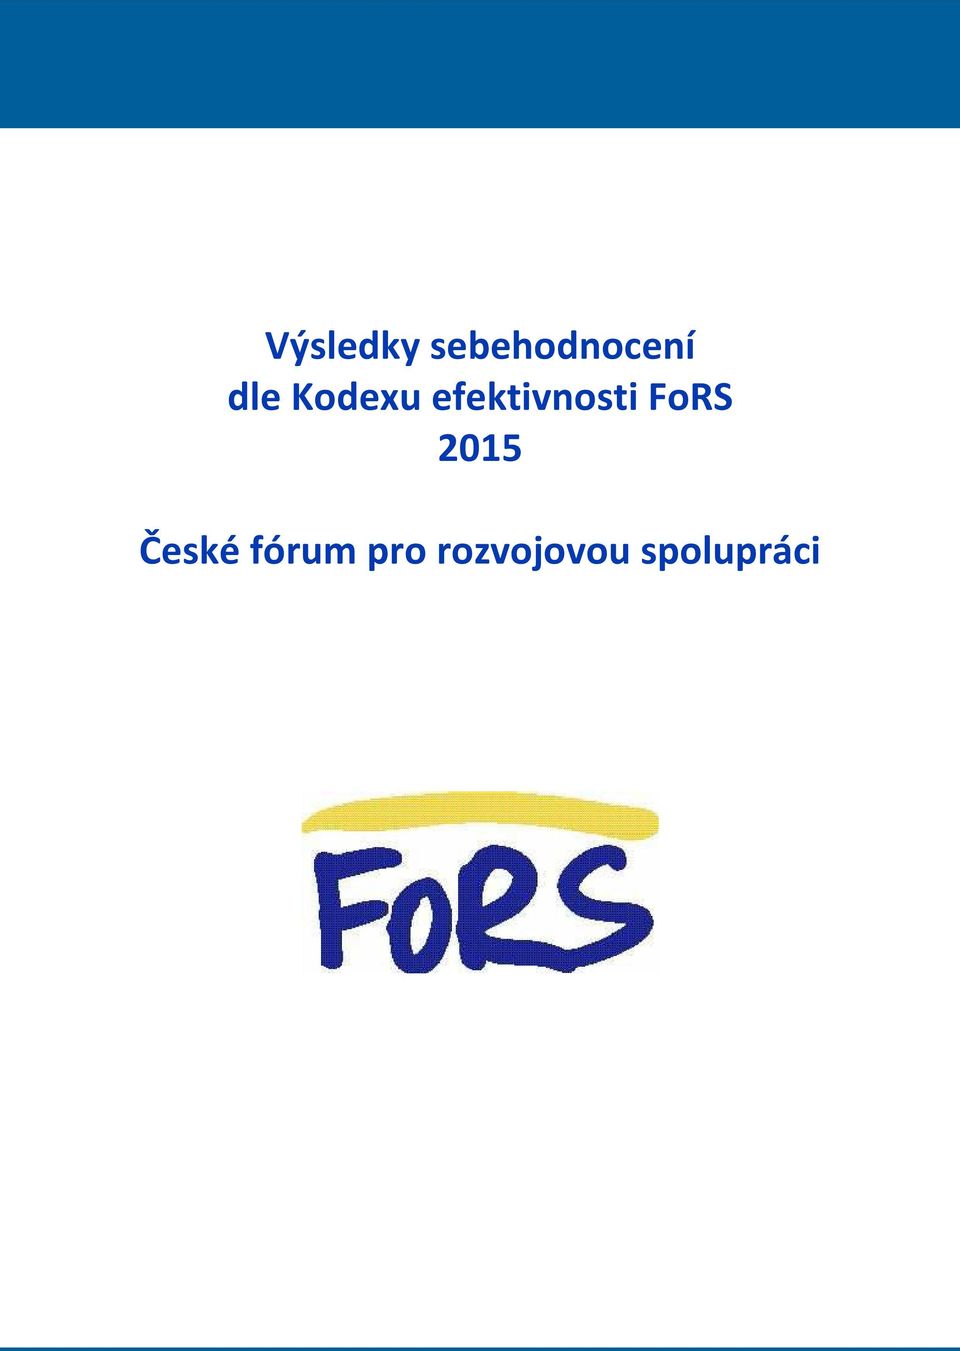 FoRS 2015 České fórum